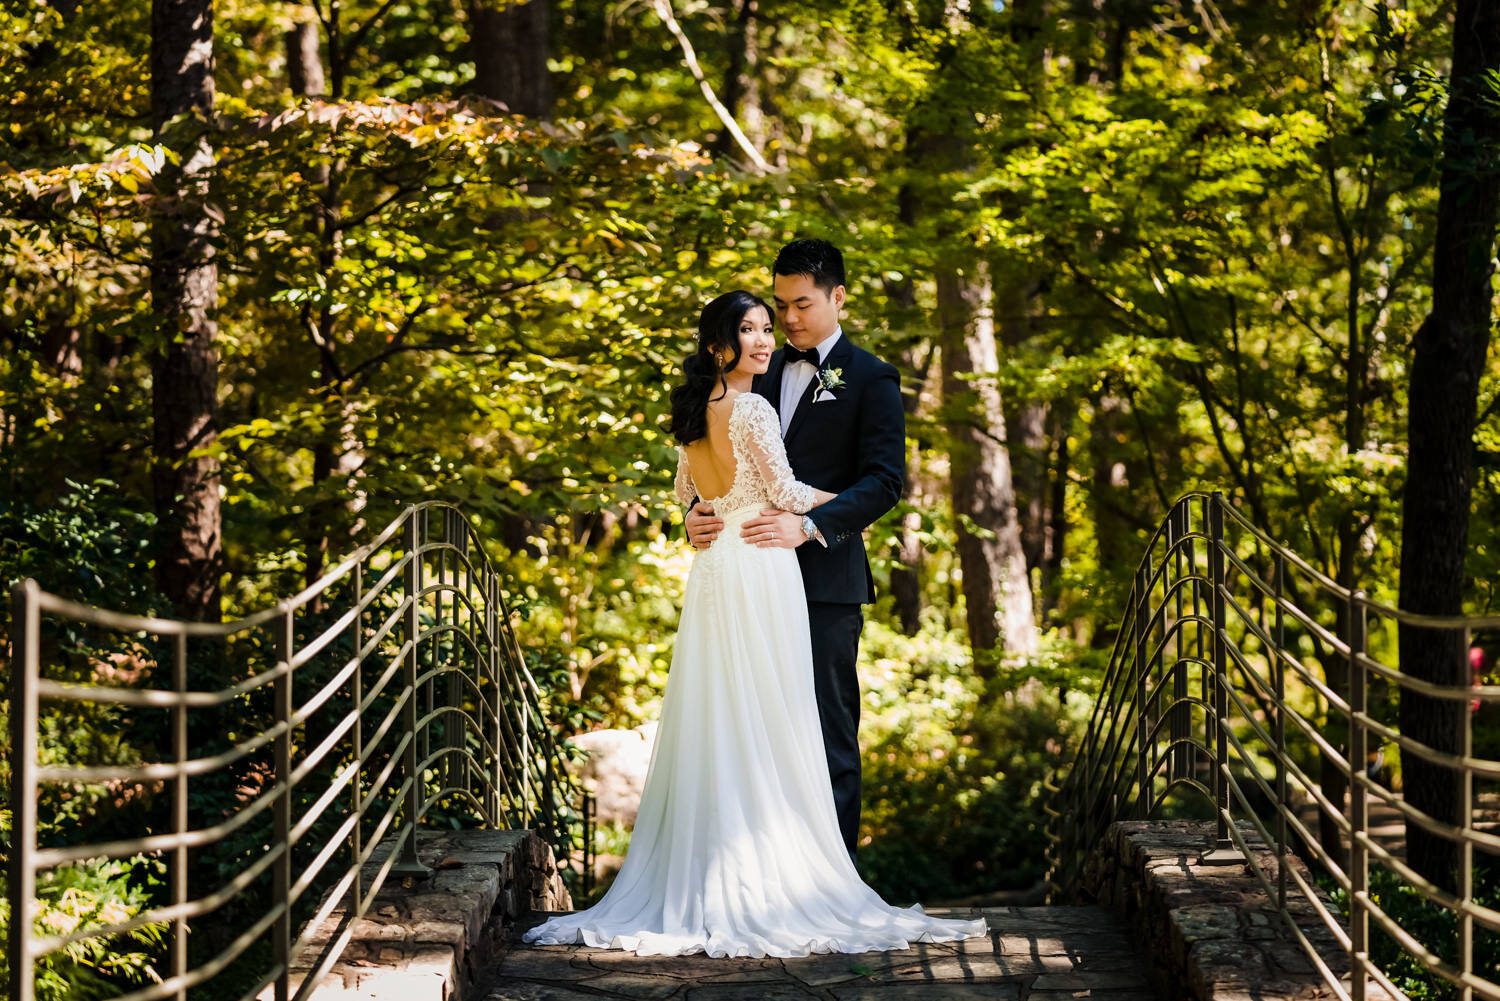  Anthony Chapel wedding by destination wedding photographer, JMGant Photography 